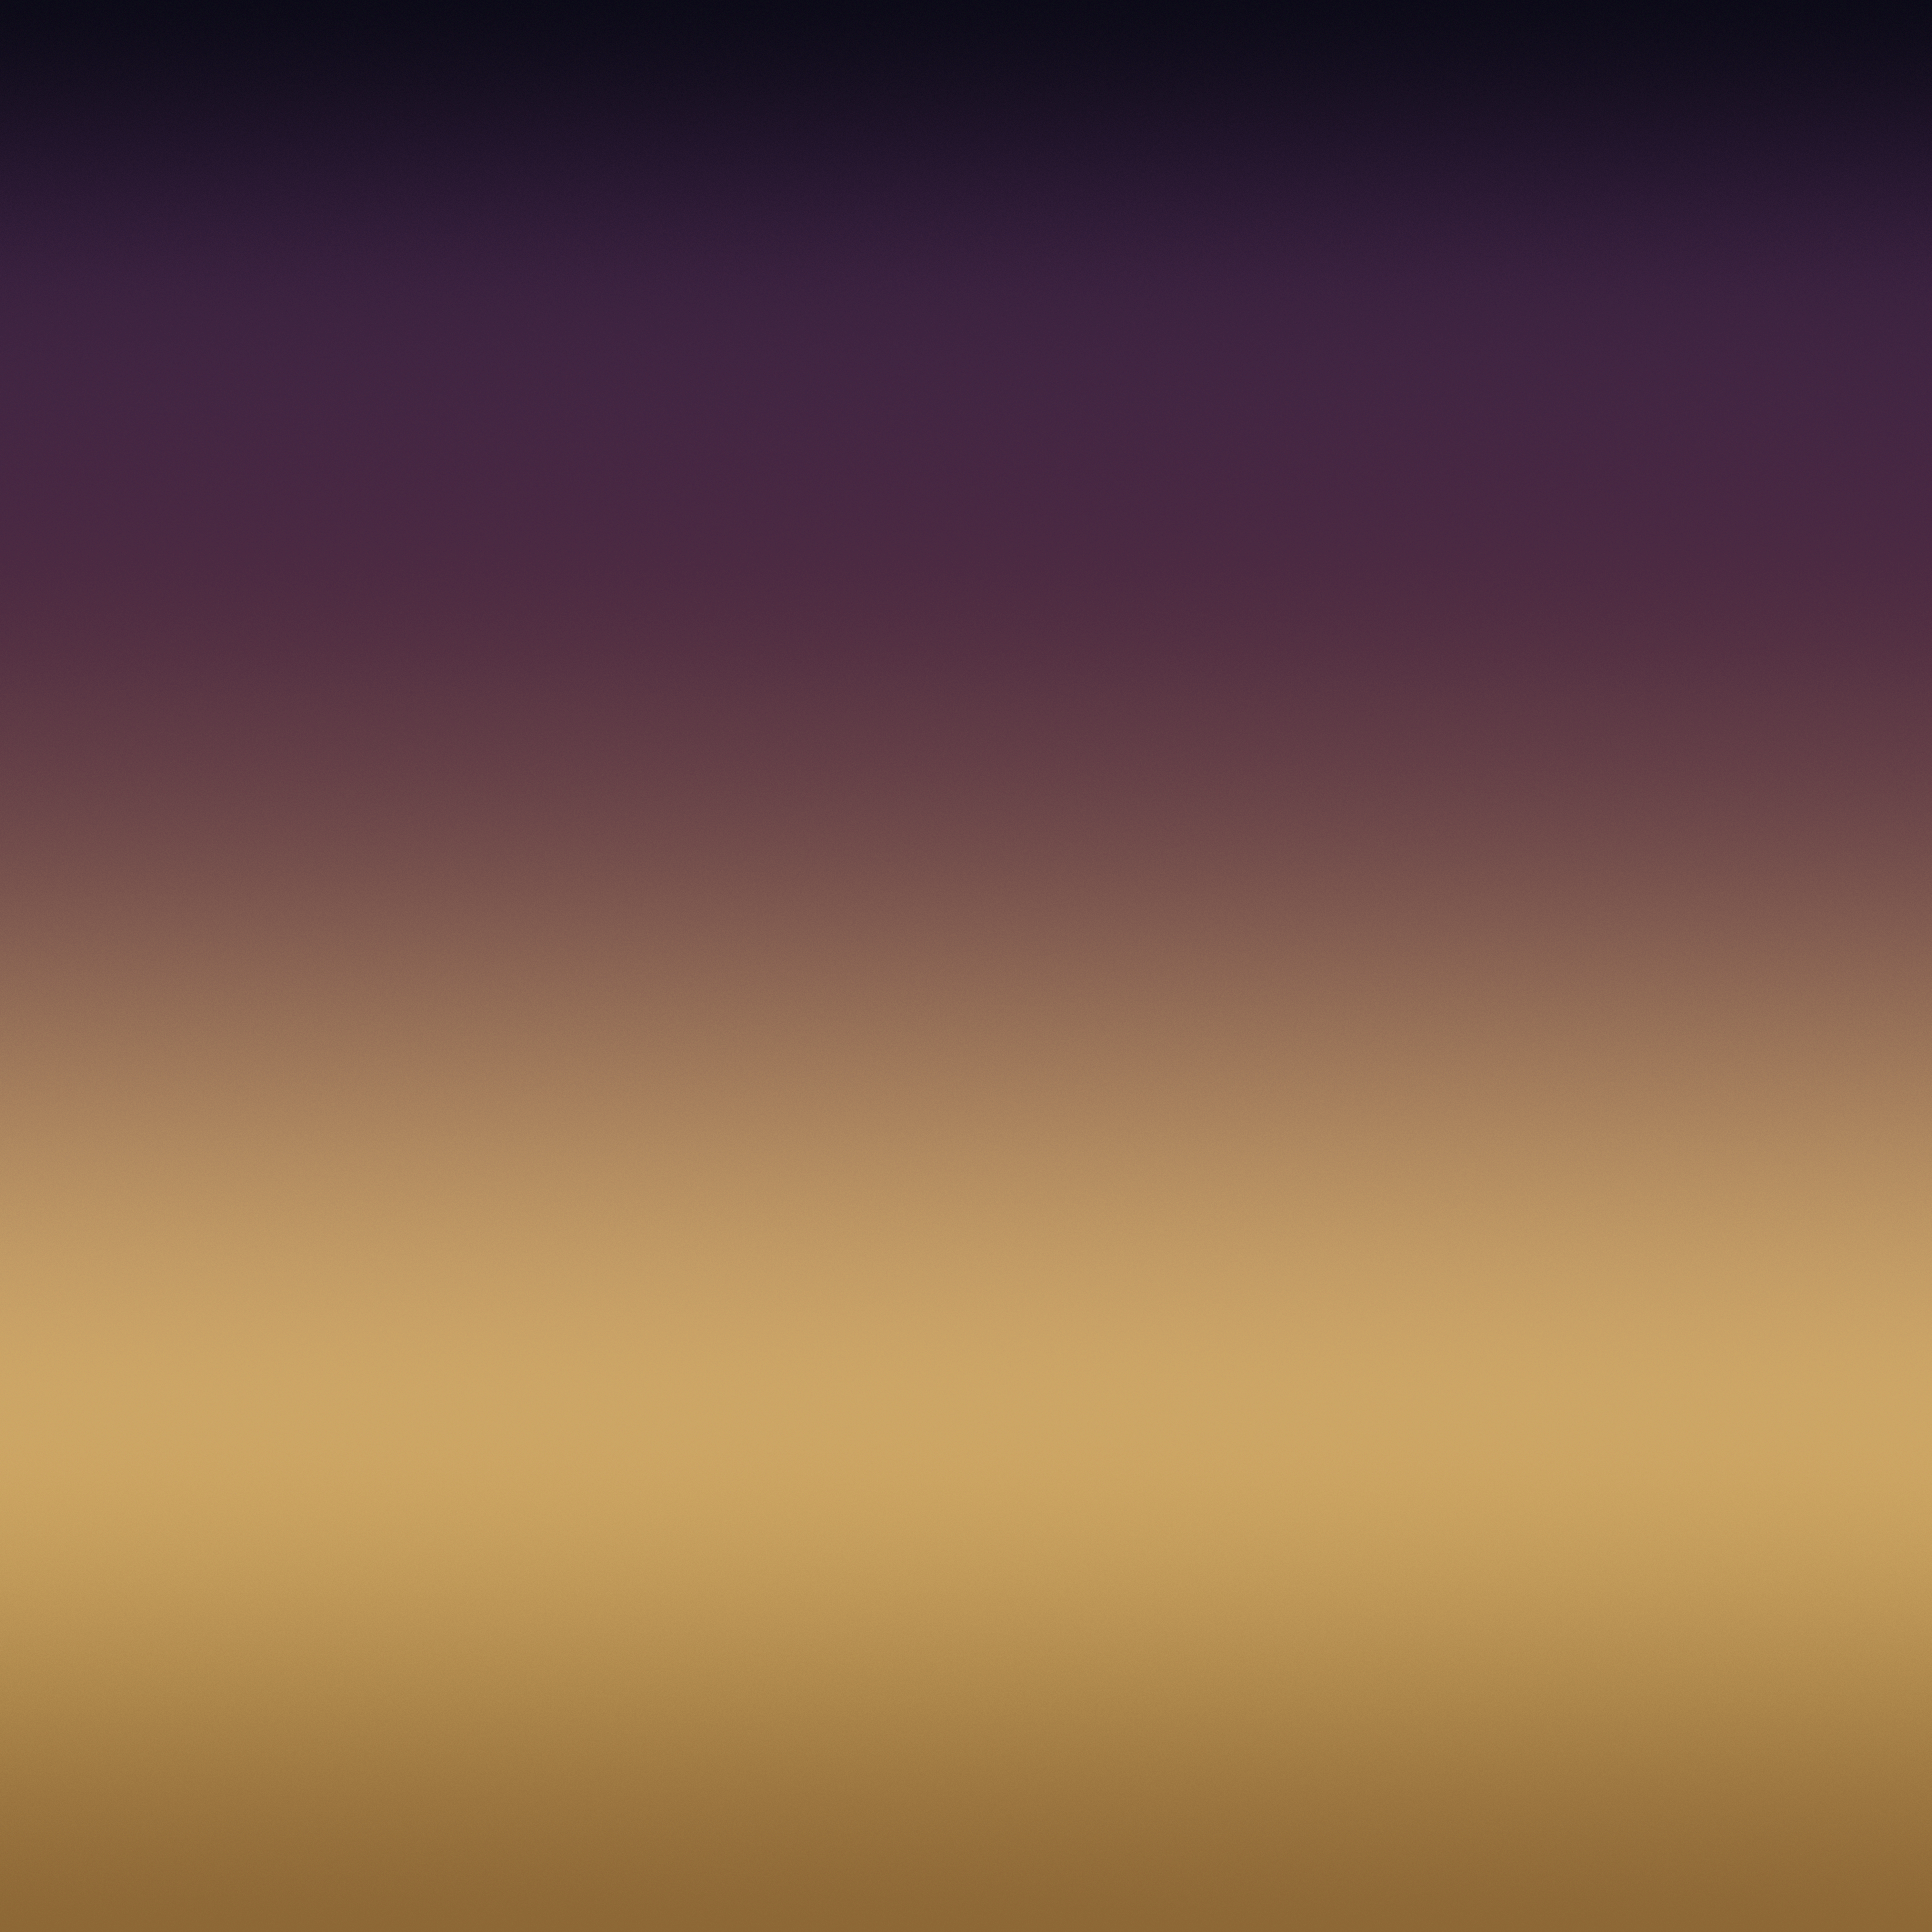 銀河s8壁紙,空,紫の,バイオレット,褐色,黄